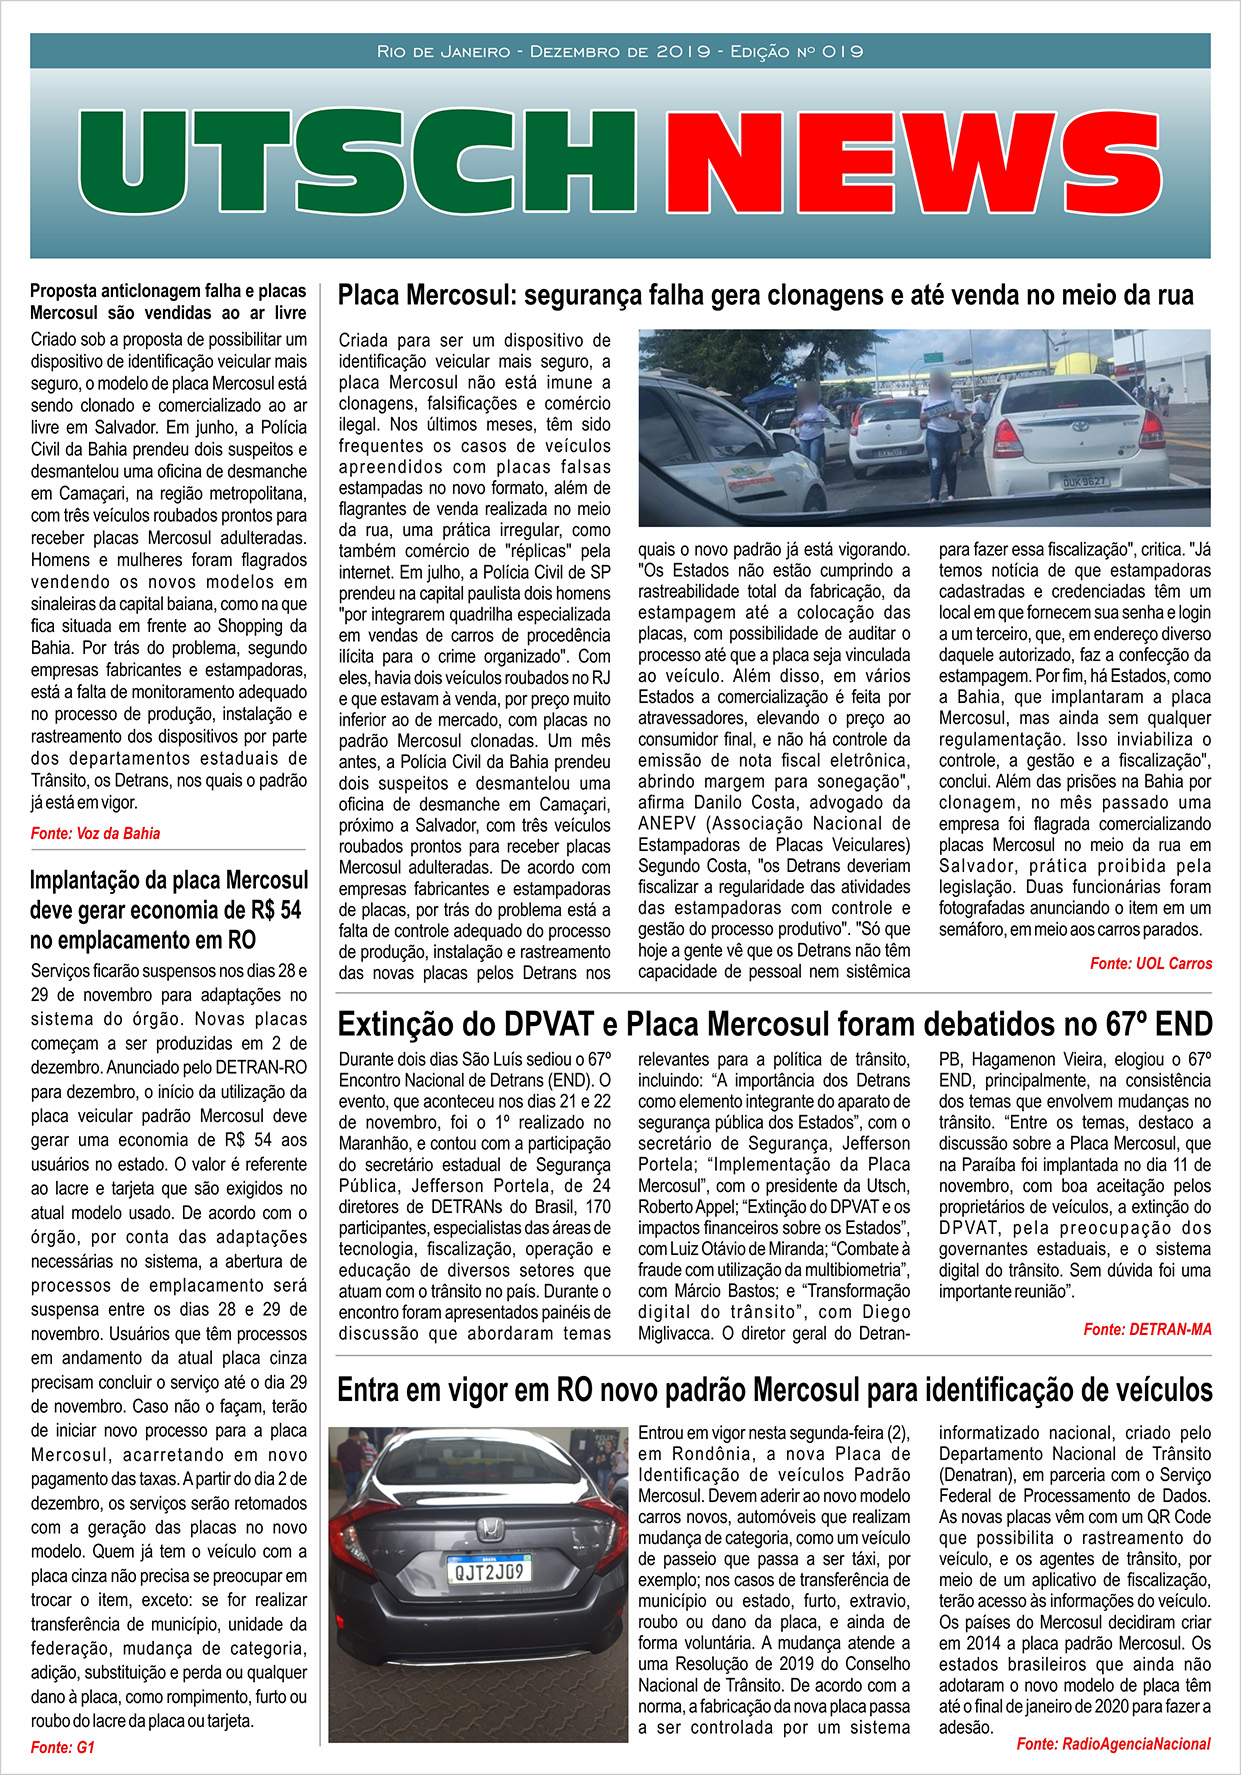 Jornal UTSCH BRASIL - edição 019 - Dezembro_2019